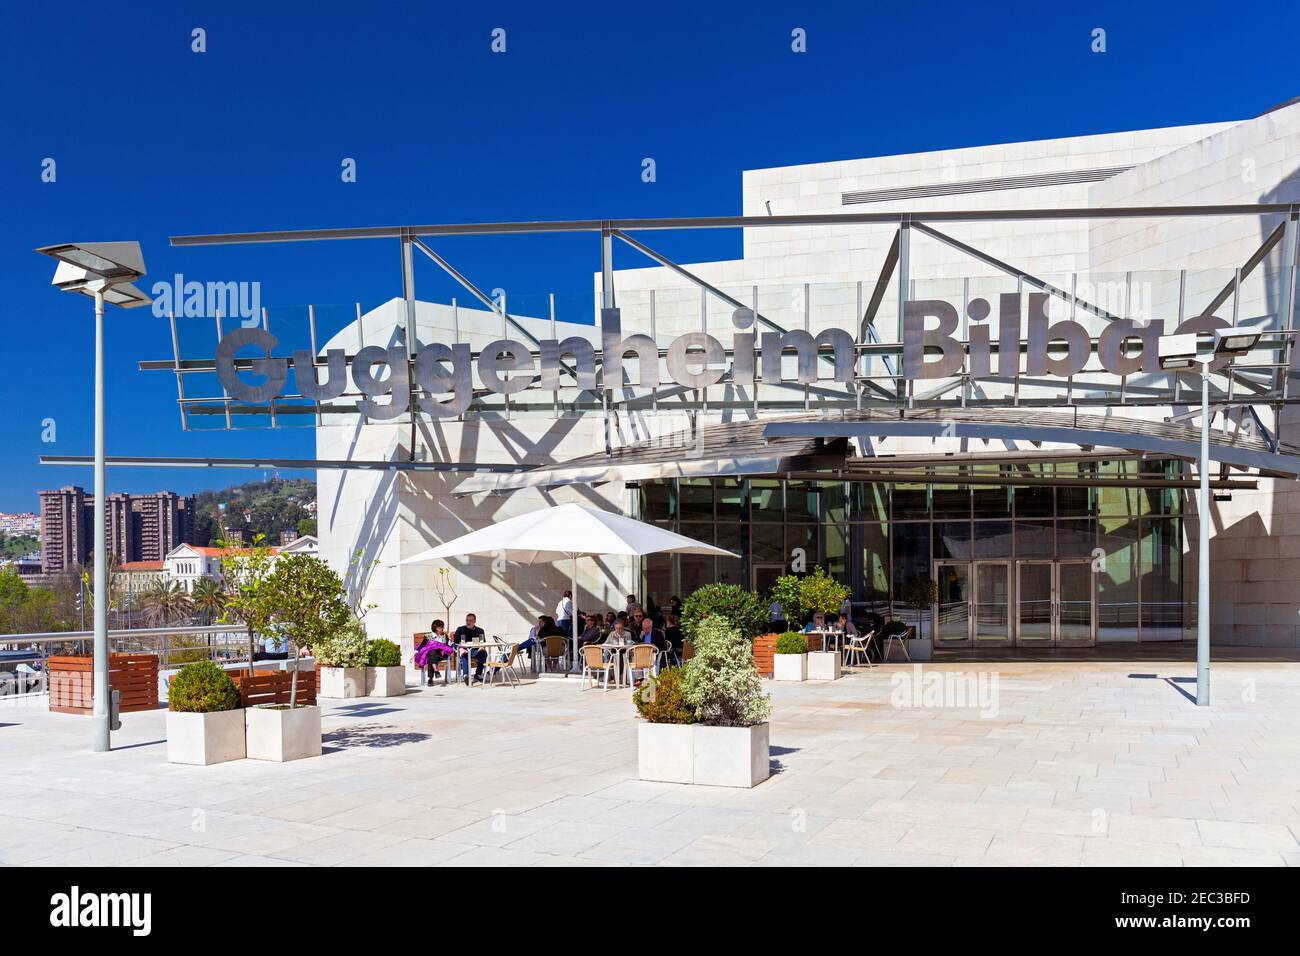 Europe, Spain, Basque Country, Bilbao, Guggenheim Museum Bilbao with Entrance Café Stock Photo